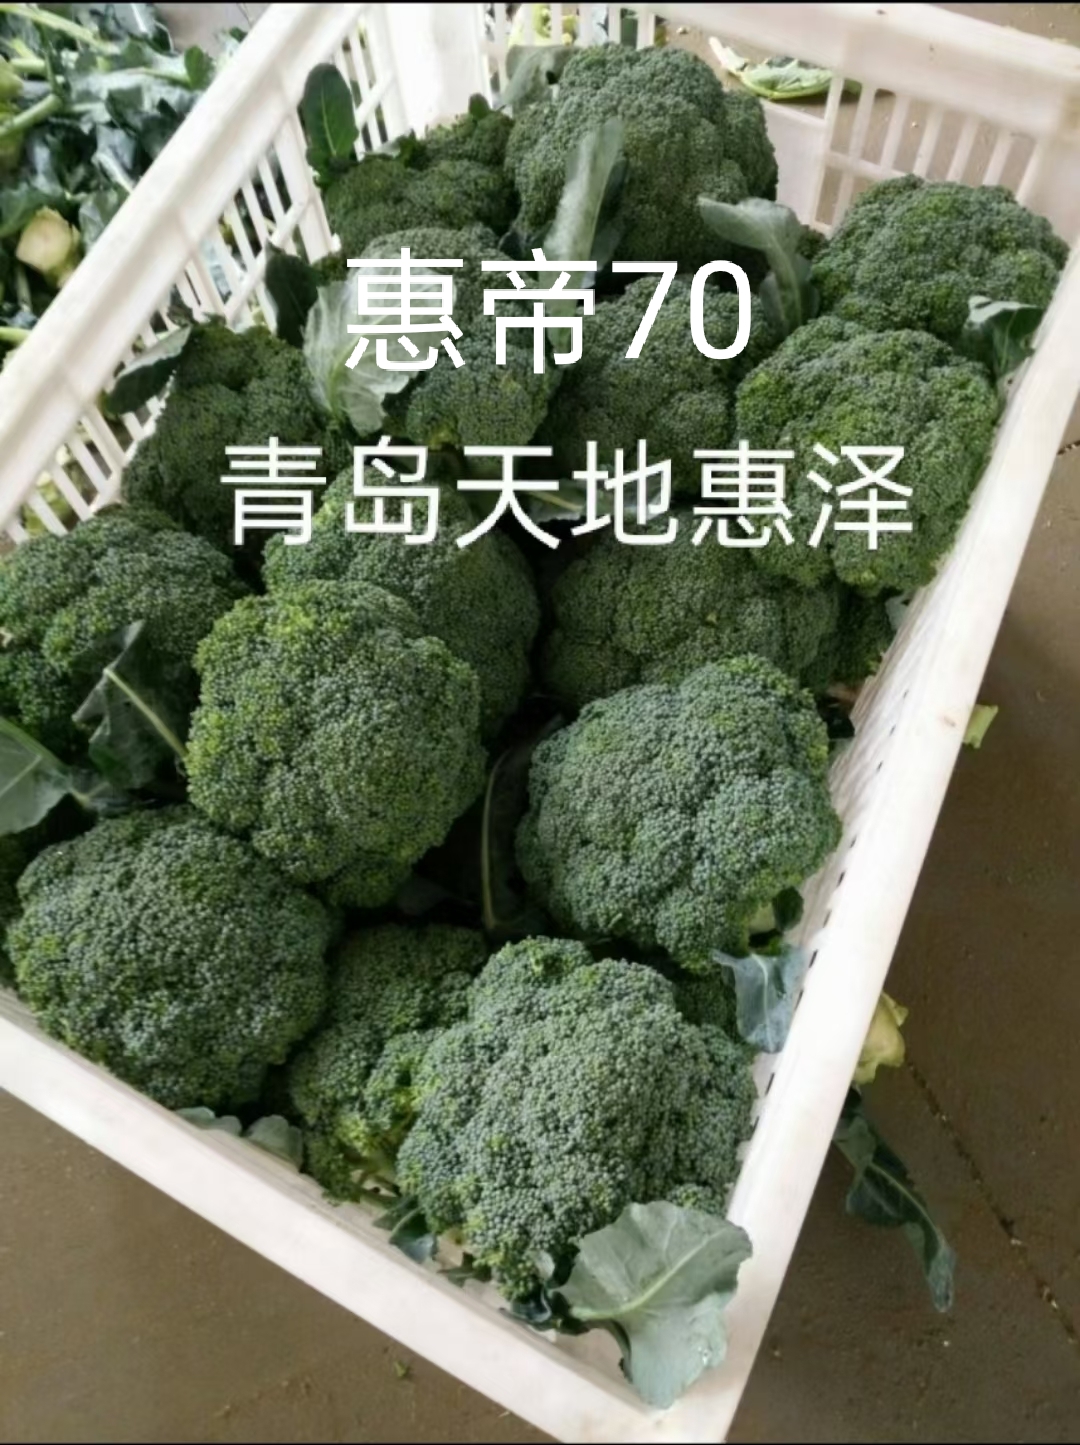 山东青岛惠帝70西兰花种子批发公司销售价格